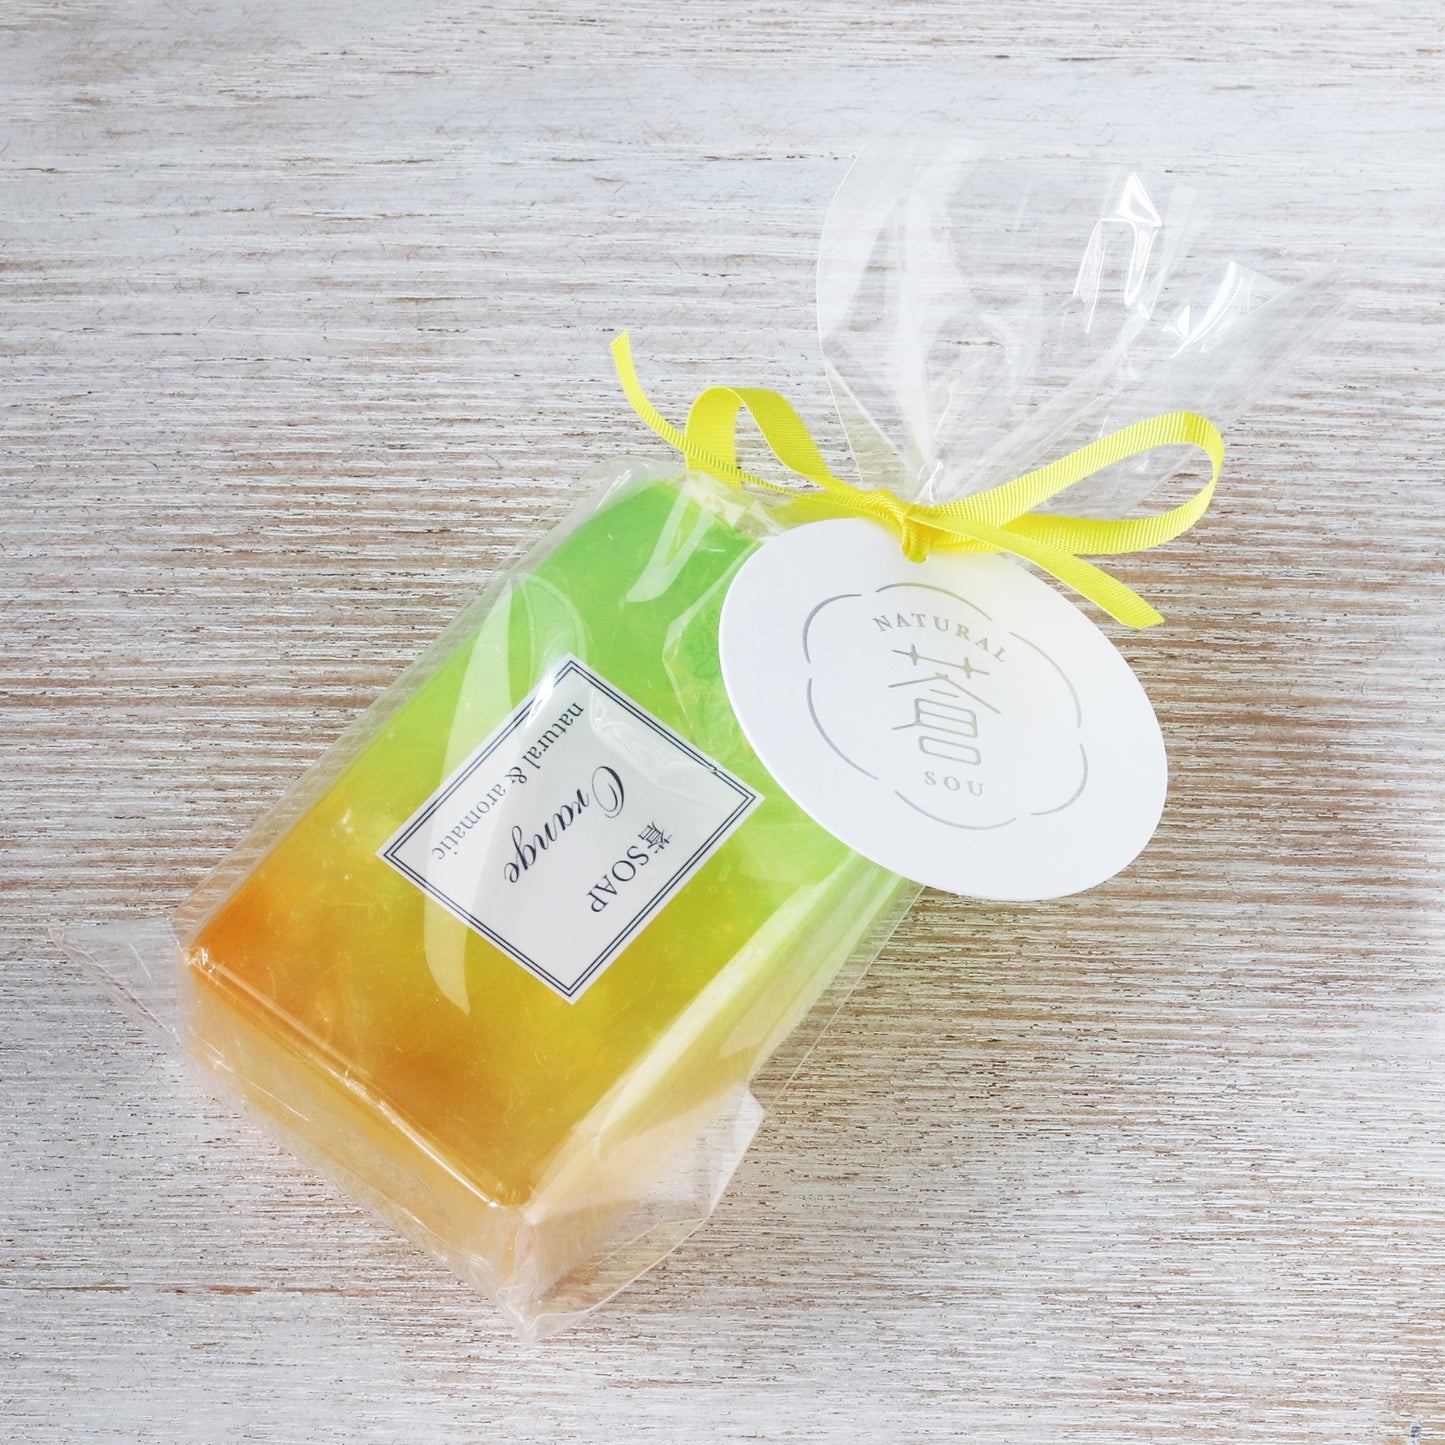 蒼SOAP（化粧石鹸）ラベンダー、ゼラニウム、オレンジの３種類